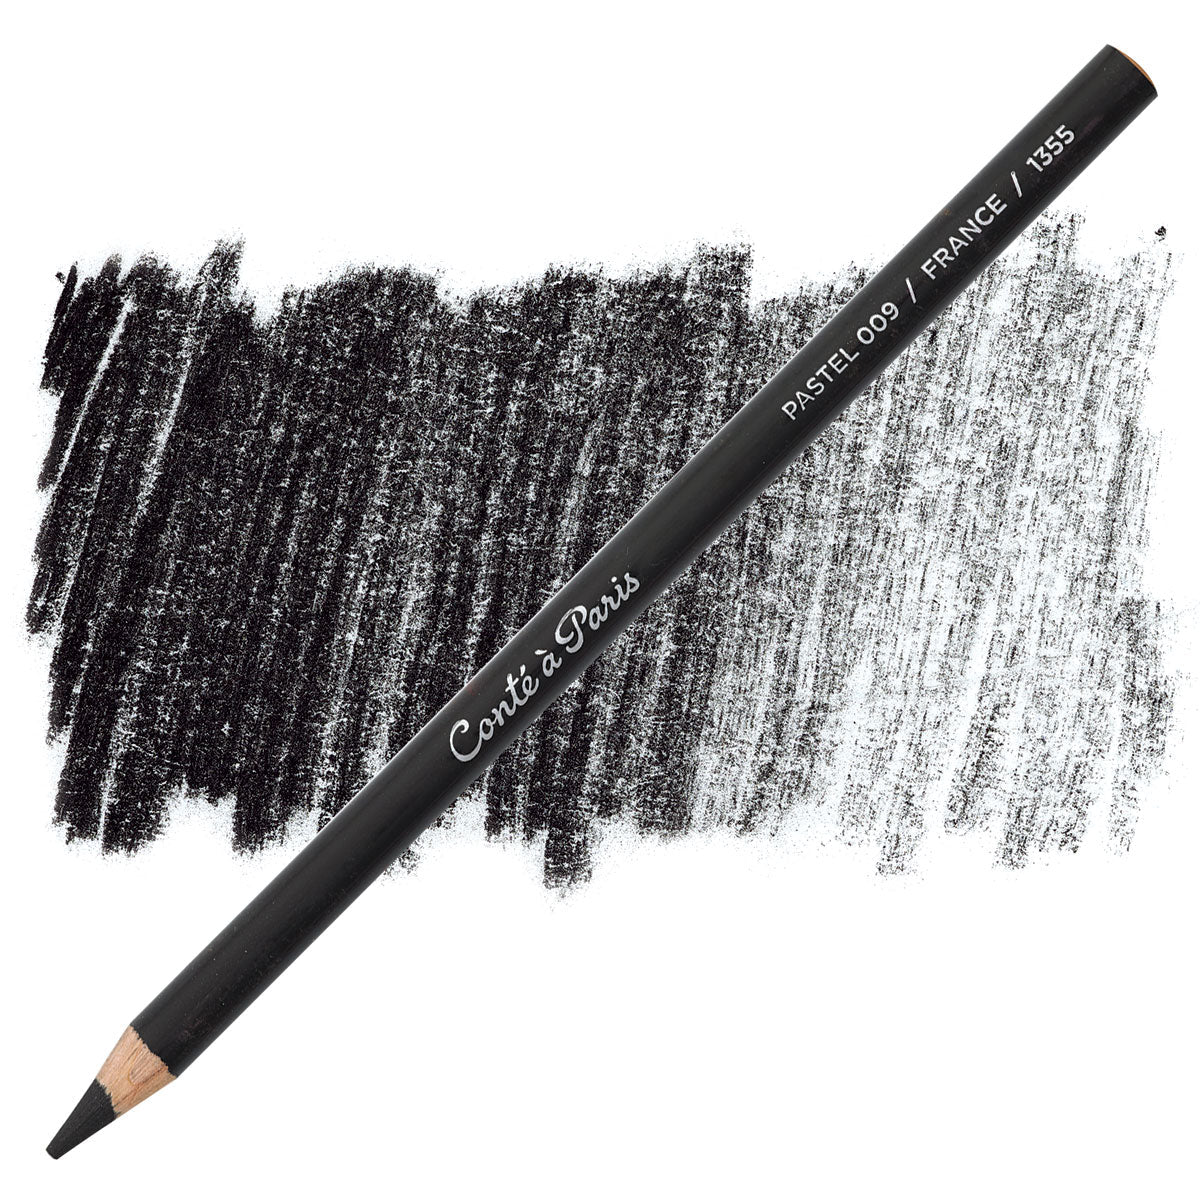 Conte Pastel Pencil 009 Black - theartshop.com.au